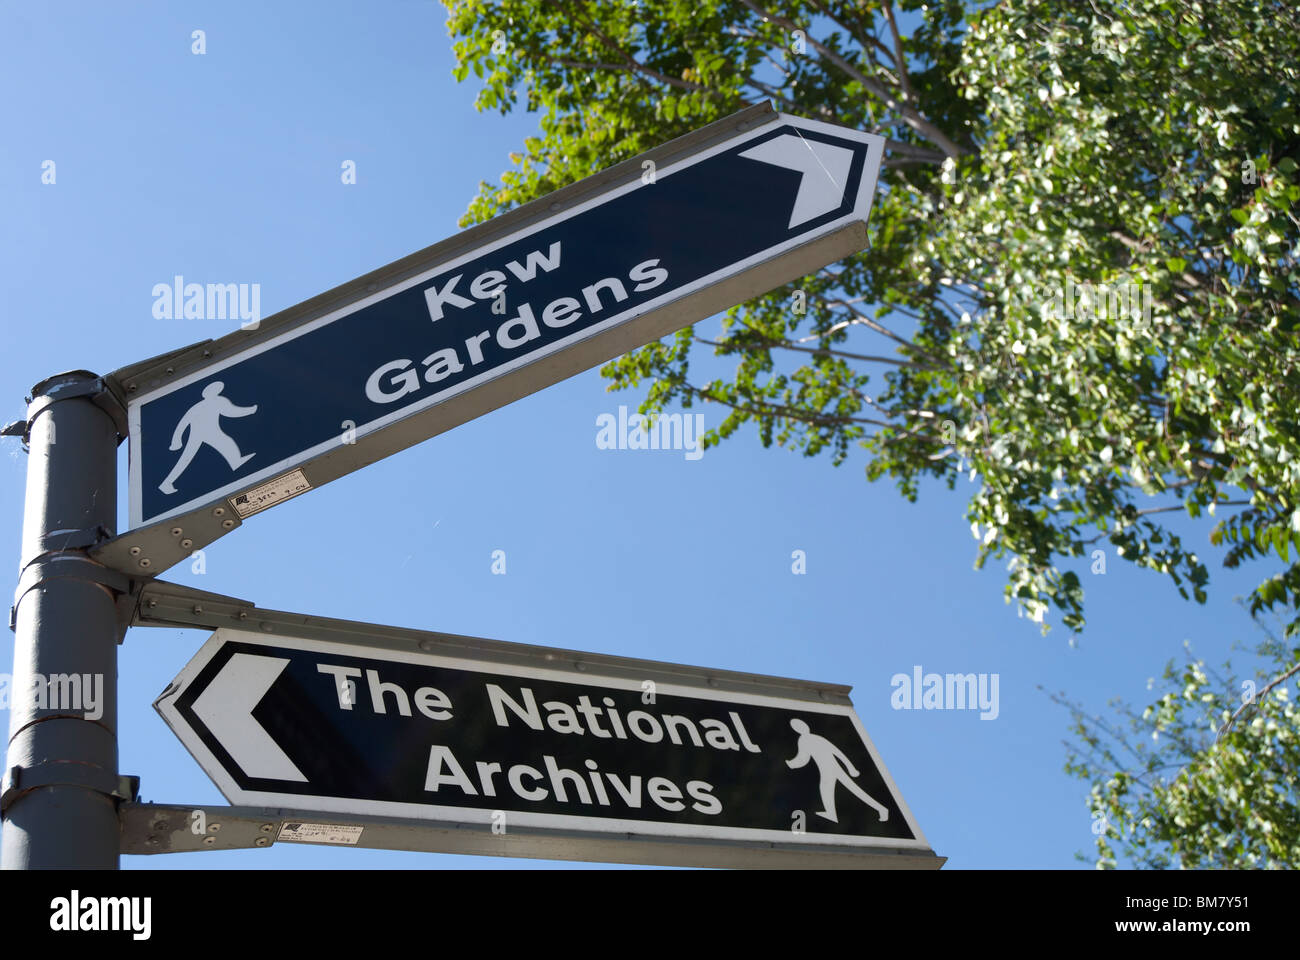 Les panneaux signalant la présence d'itinéraires de randonnées pour les archives nationales et les jardins de Kew, à Kew, Surrey, Angleterre Banque D'Images